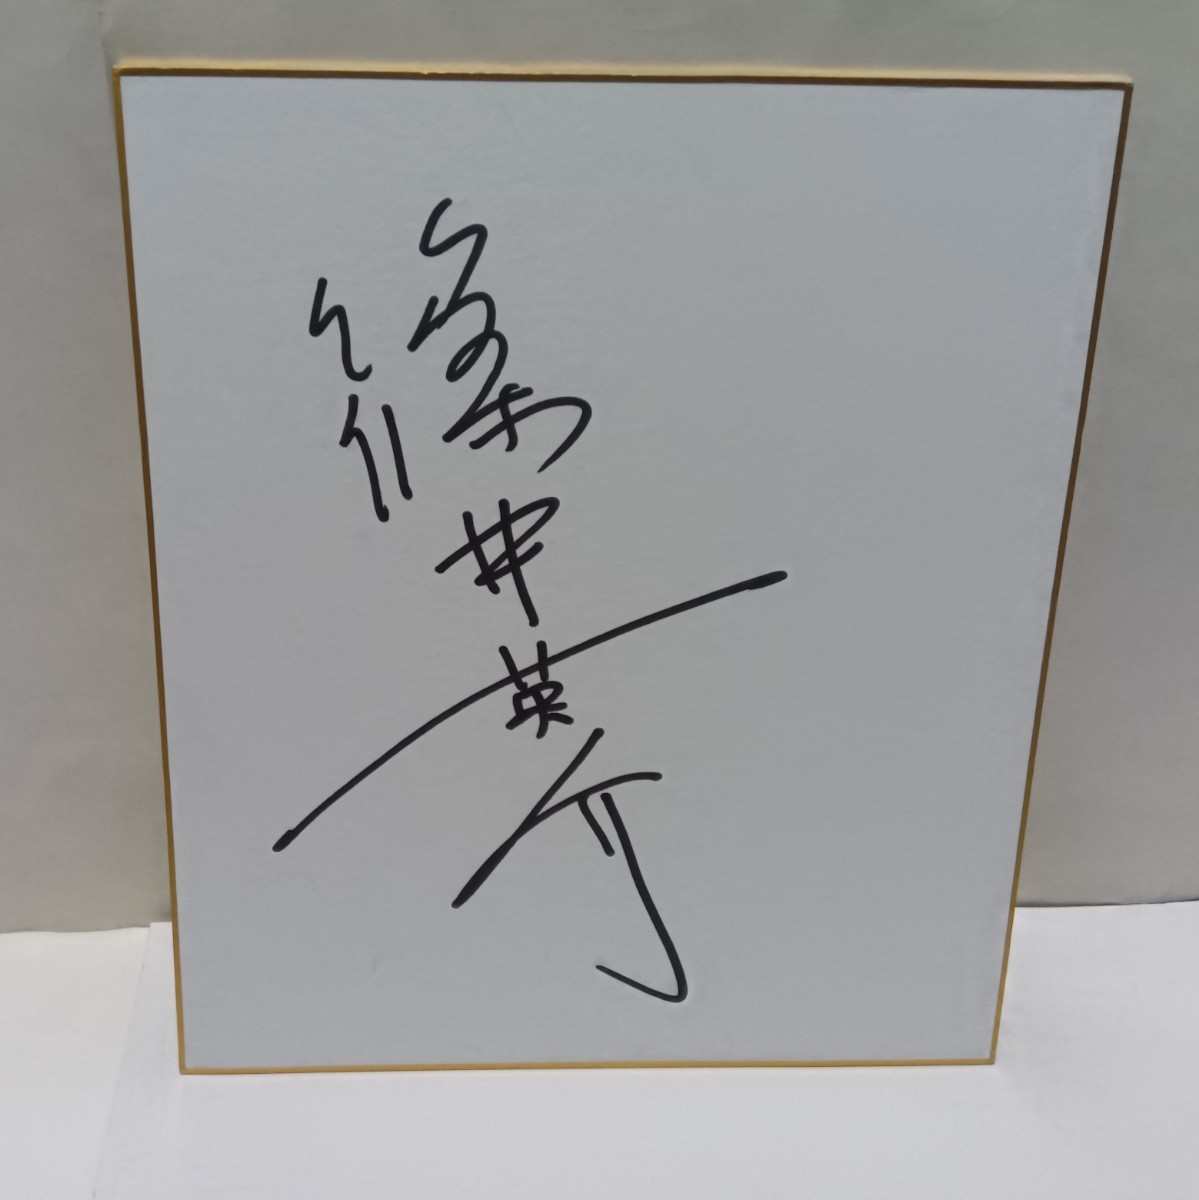 तत्काल निर्णय! शिनोई ईसुके का हस्ताक्षरित रंगीन कागज, सेलिब्रिटी सामान, संकेत